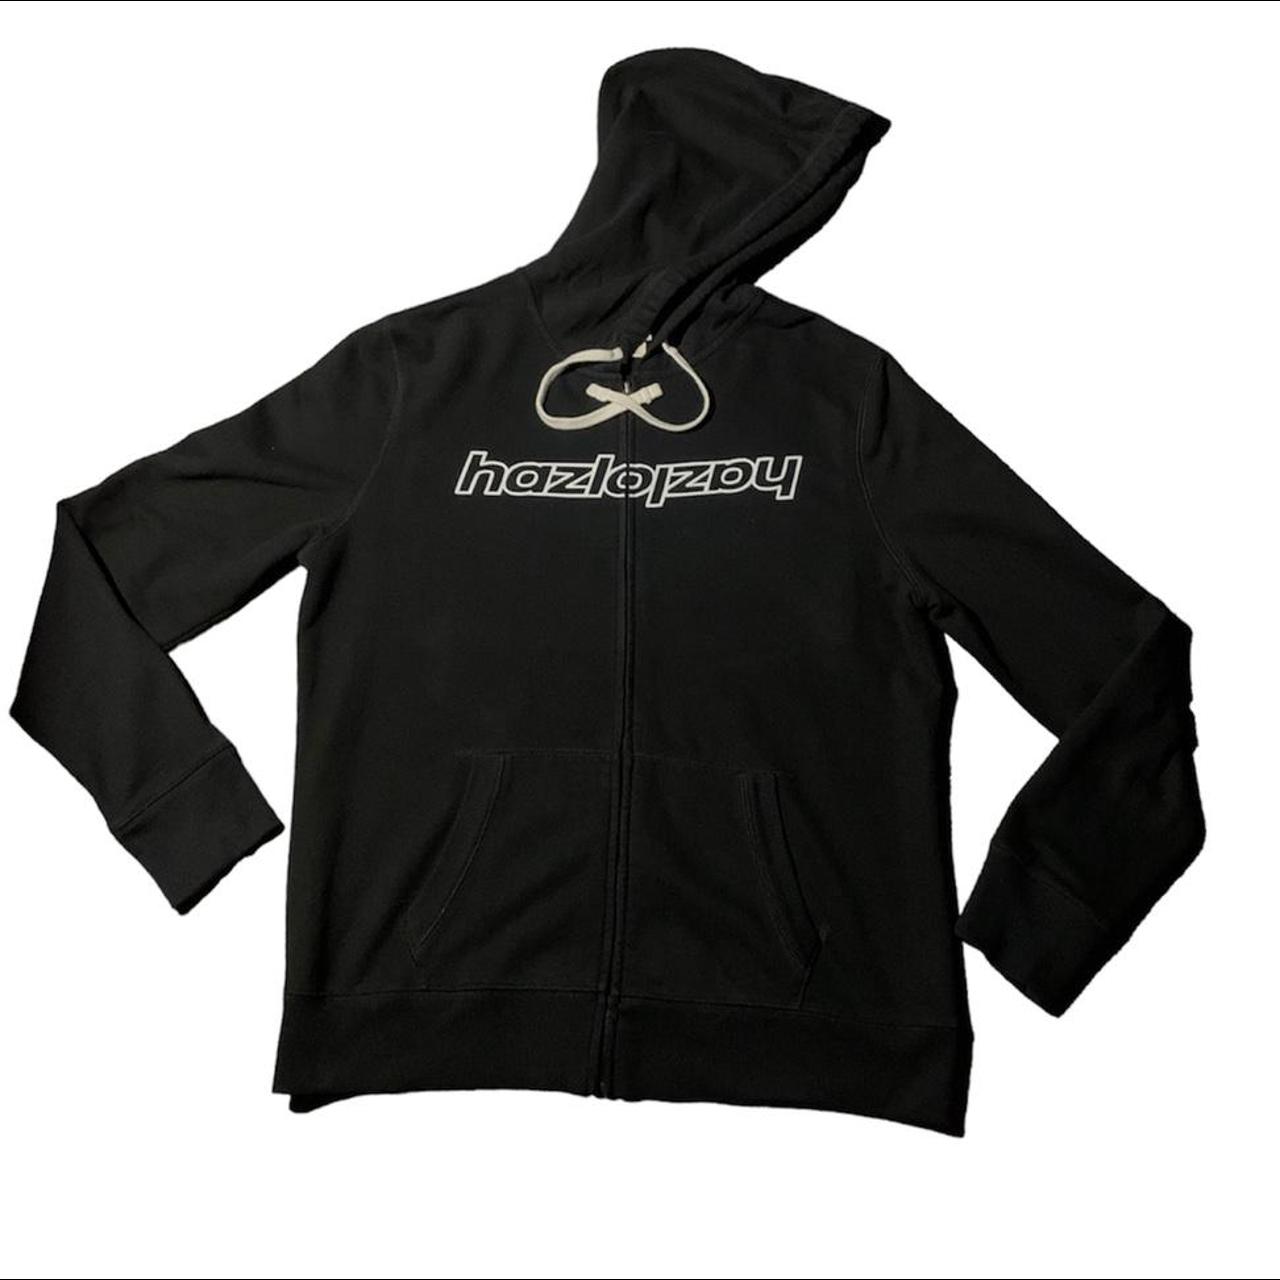 zip up hoodie from my brand using depop as an... - Depop